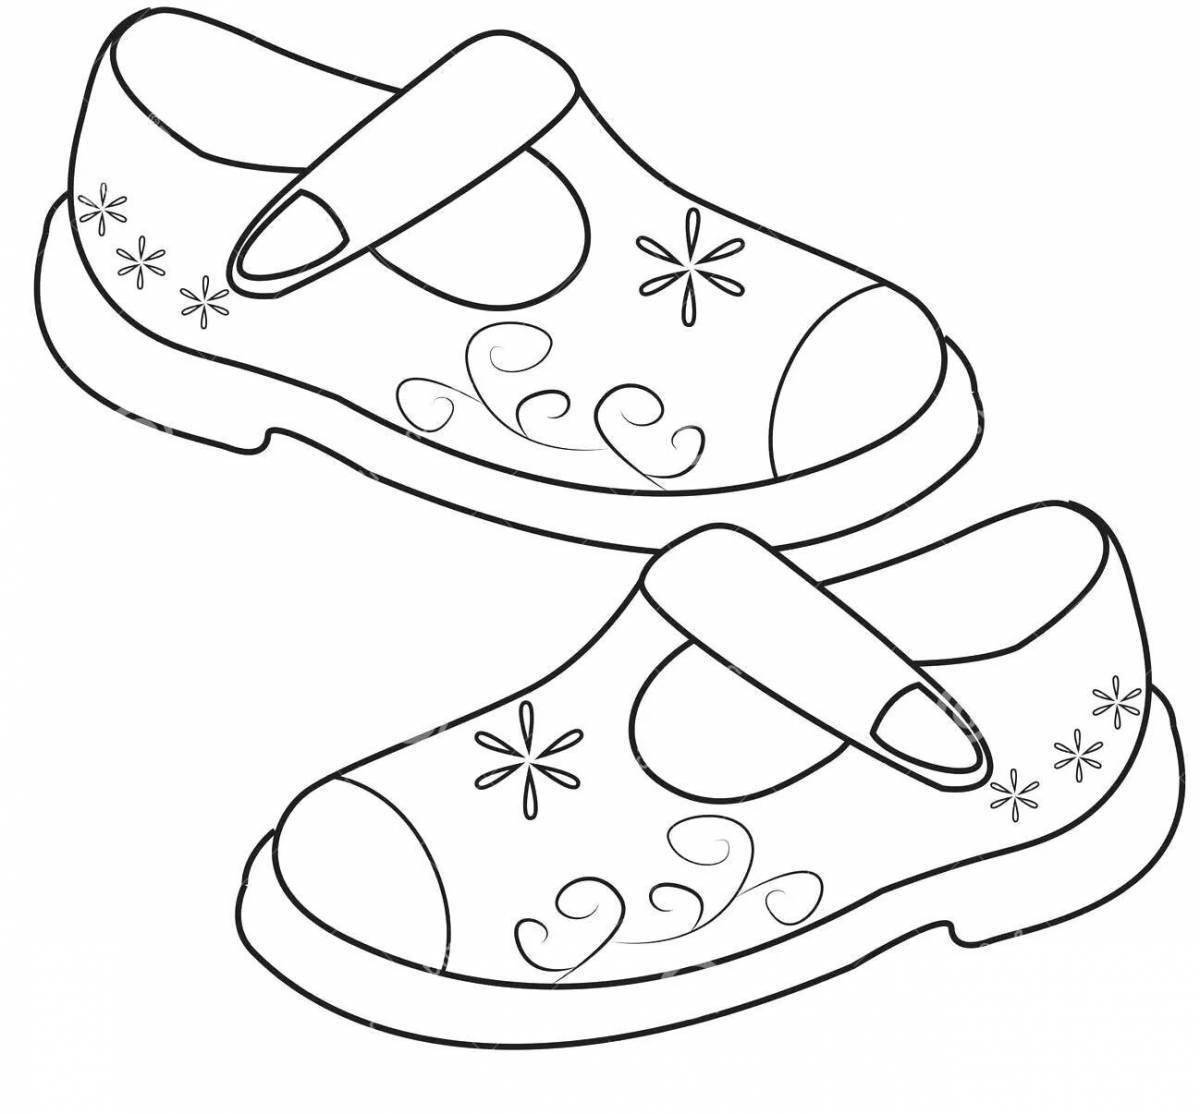 Игривая страница раскраски обуви для детей 5-6 лет